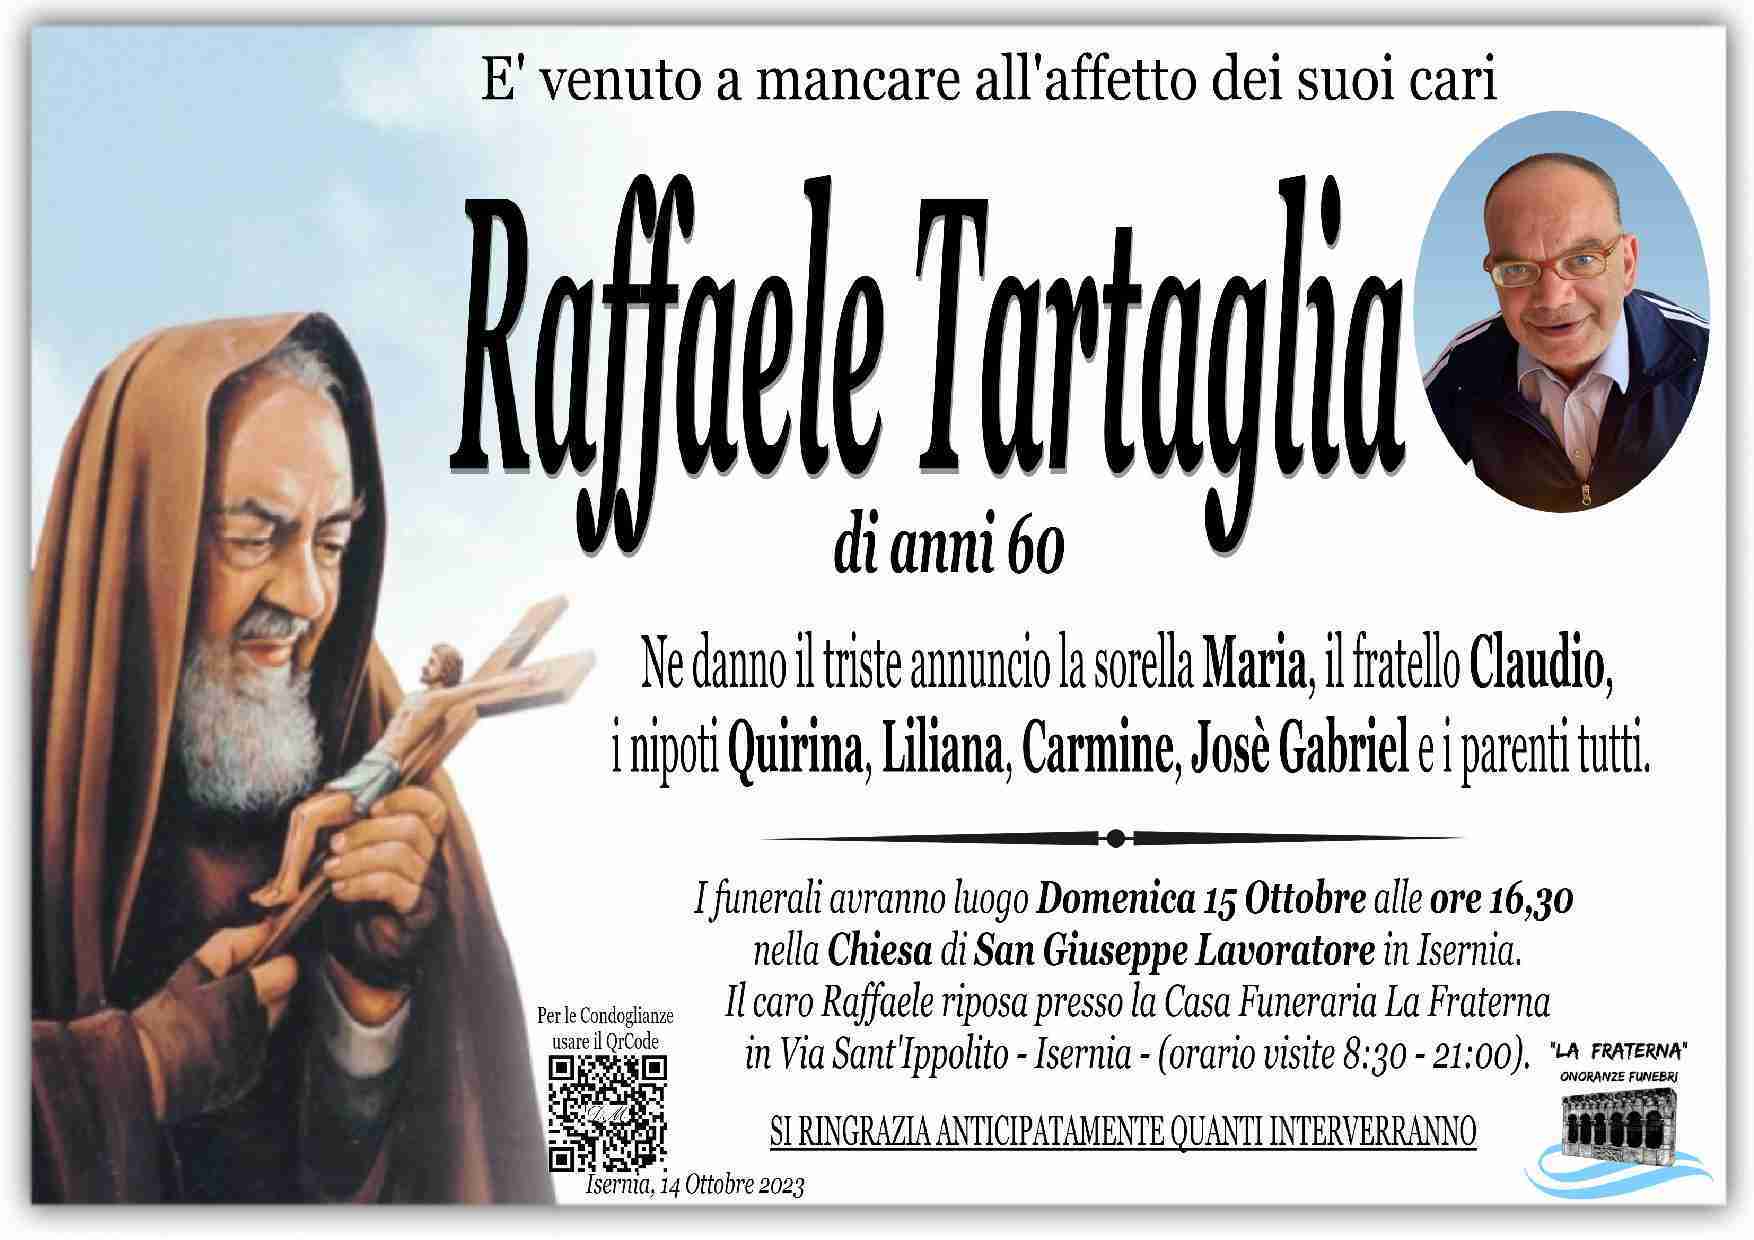 Raffaele Tartaglia